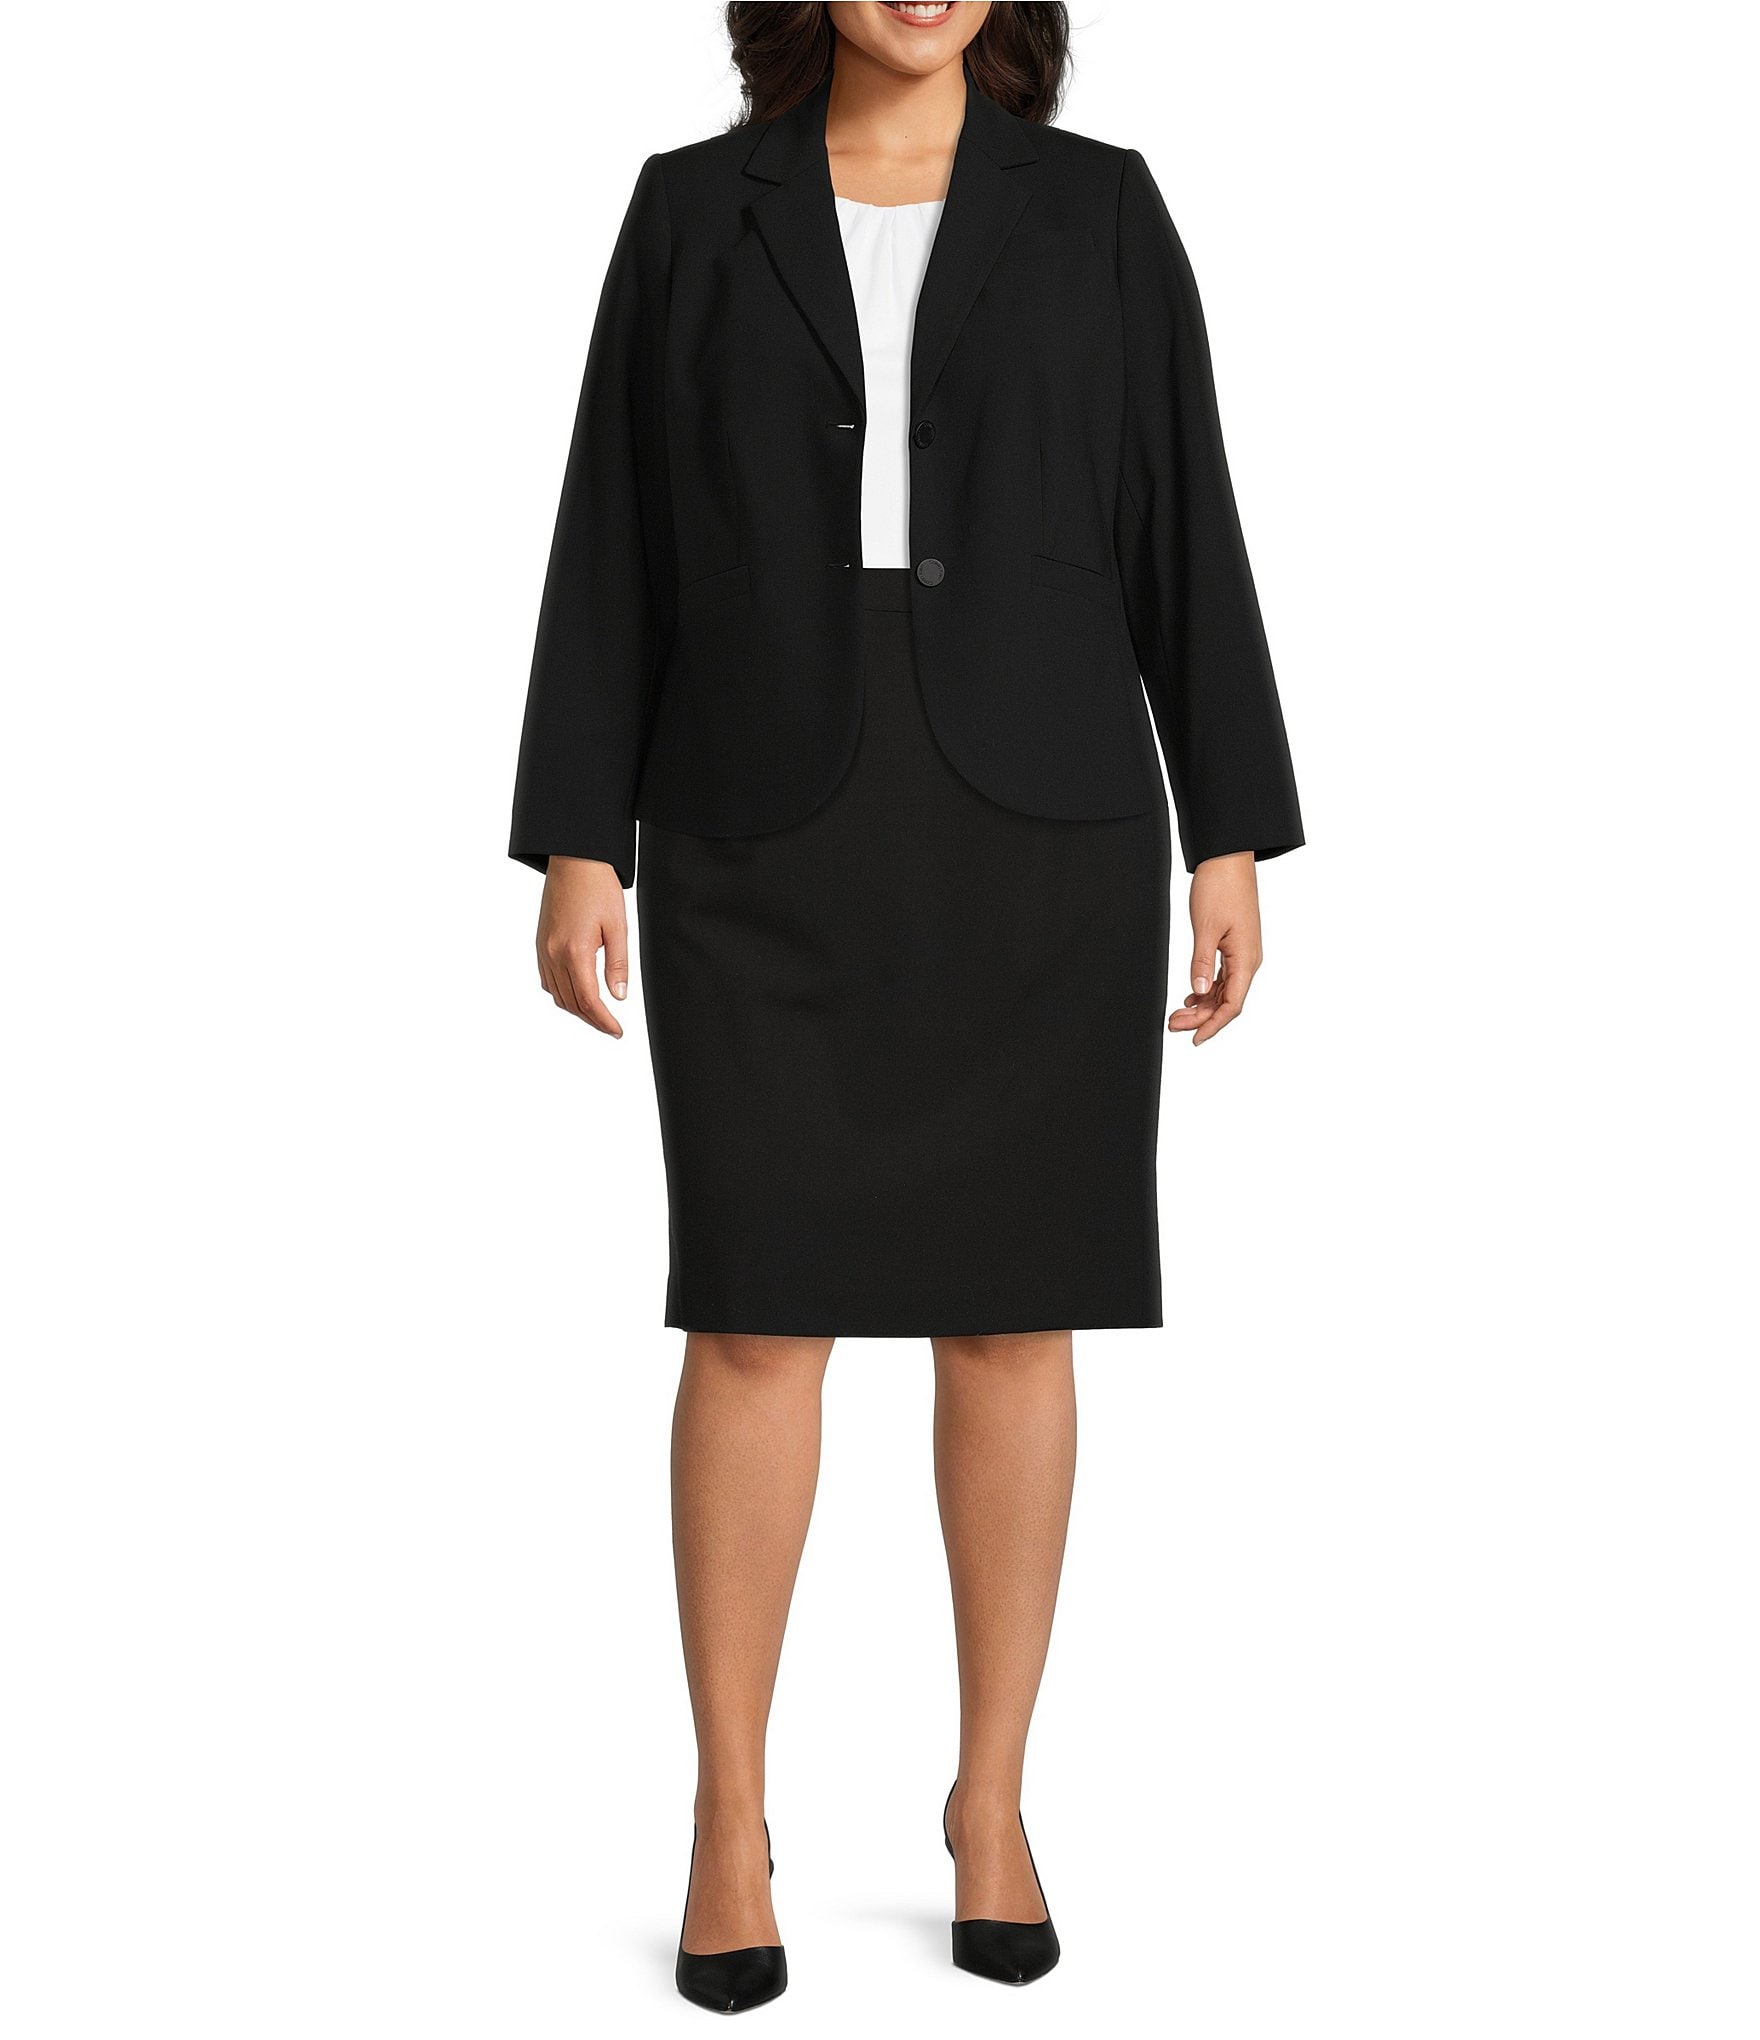 Kosciuszko Rouse blande Calvin Klein Plus Size 2-Button Jacket & Pencil Skirt | Dillard's